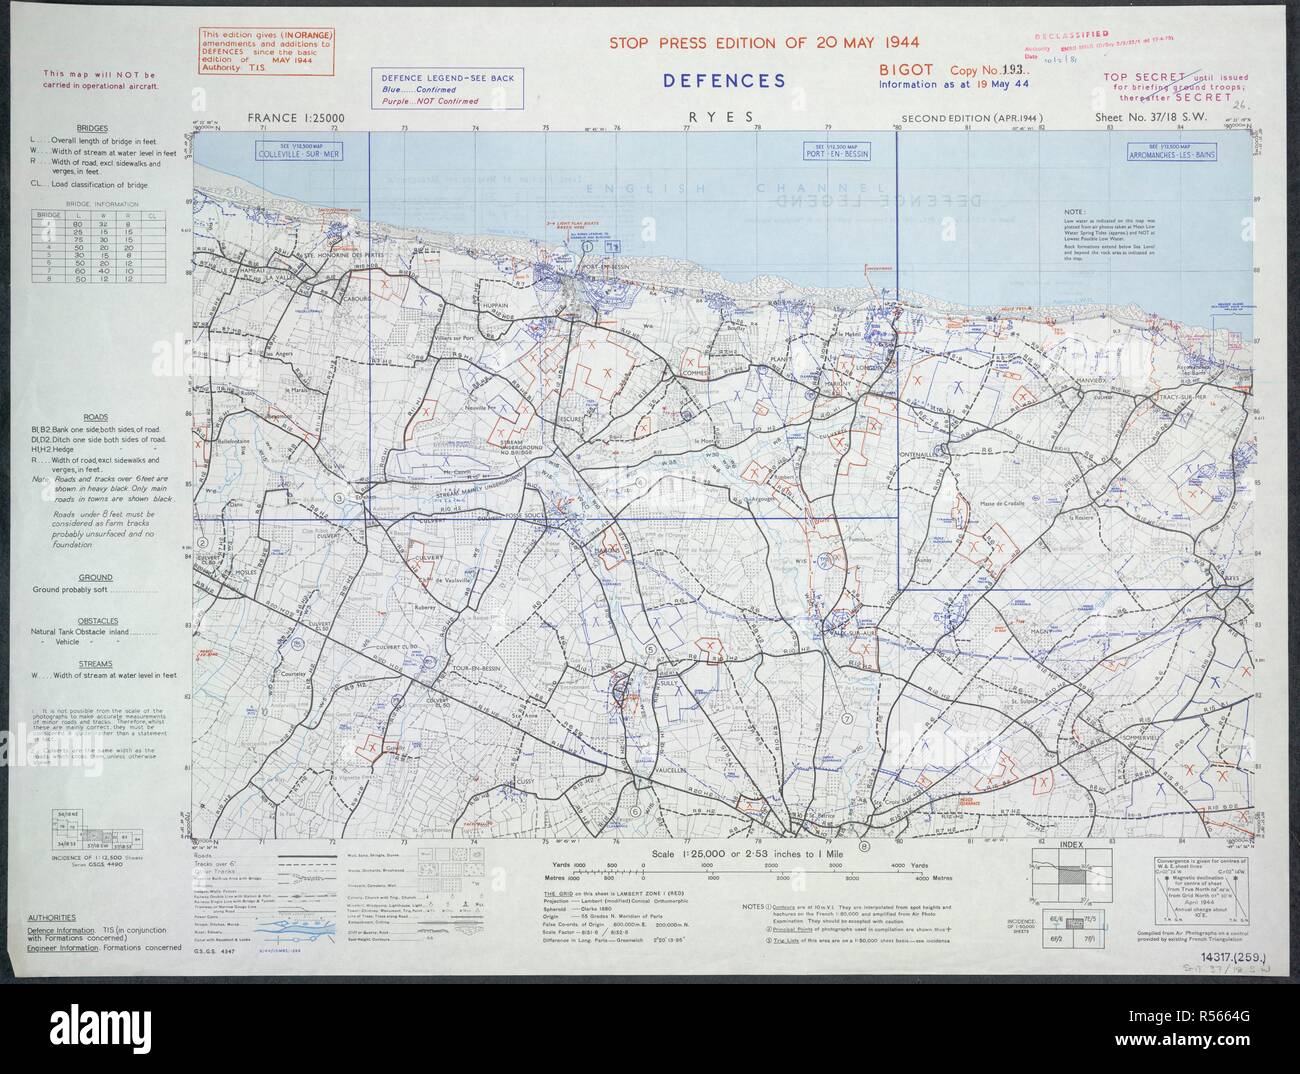 Ryes, Francia. Spiaggia d'oro. Una mappa della Seconda Guerra Mondiale. Francia 1:25.000 difese, razzista. [Londra] : Ufficio di guerra, 1944. Fonte: Mappe 14317.(259) 37-18 SW. Foto Stock